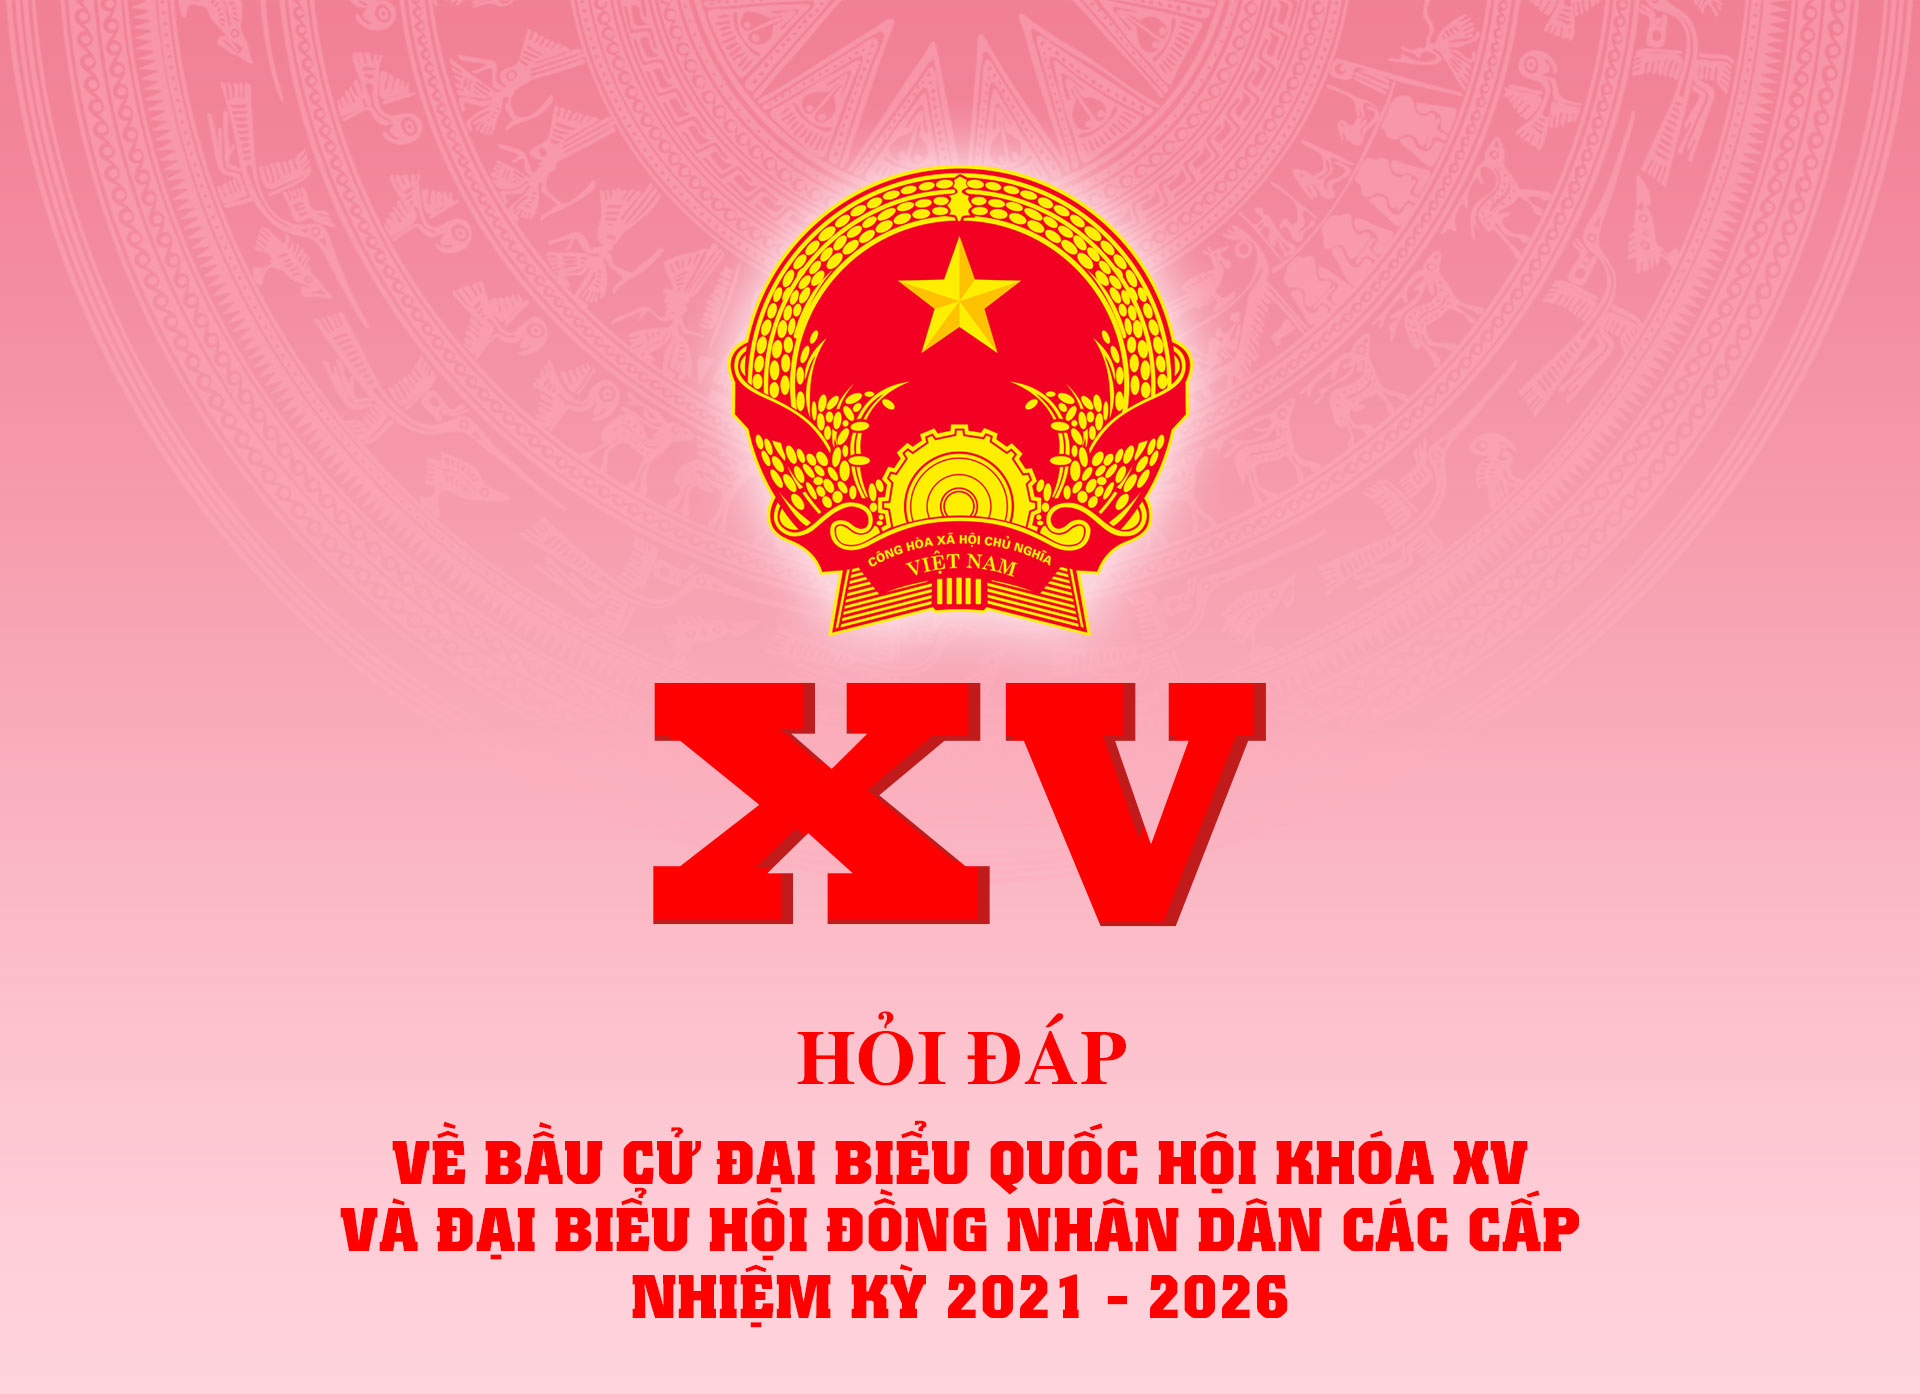 Cuộc bầu cử, đại biểu, quốc kỳ Việt Nam:
Hãy cùng chào đón những ngày bầu cử đầy ý nghĩa với quốc kỳ Việt Nam được mang đến bởi các đại biểu đại diện cho quyền dân chủ và tự do. Bạn sẽ không thể bỏ lỡ những khoảnh khắc đầy đam mê, hy vọng và tiếng cười sảng khoái khi các nhà lãnh đạo mang quốc kỳ Việt Nam nâng cao lên cao trên đầu để biểu tình niềm tin và sự chính trực.